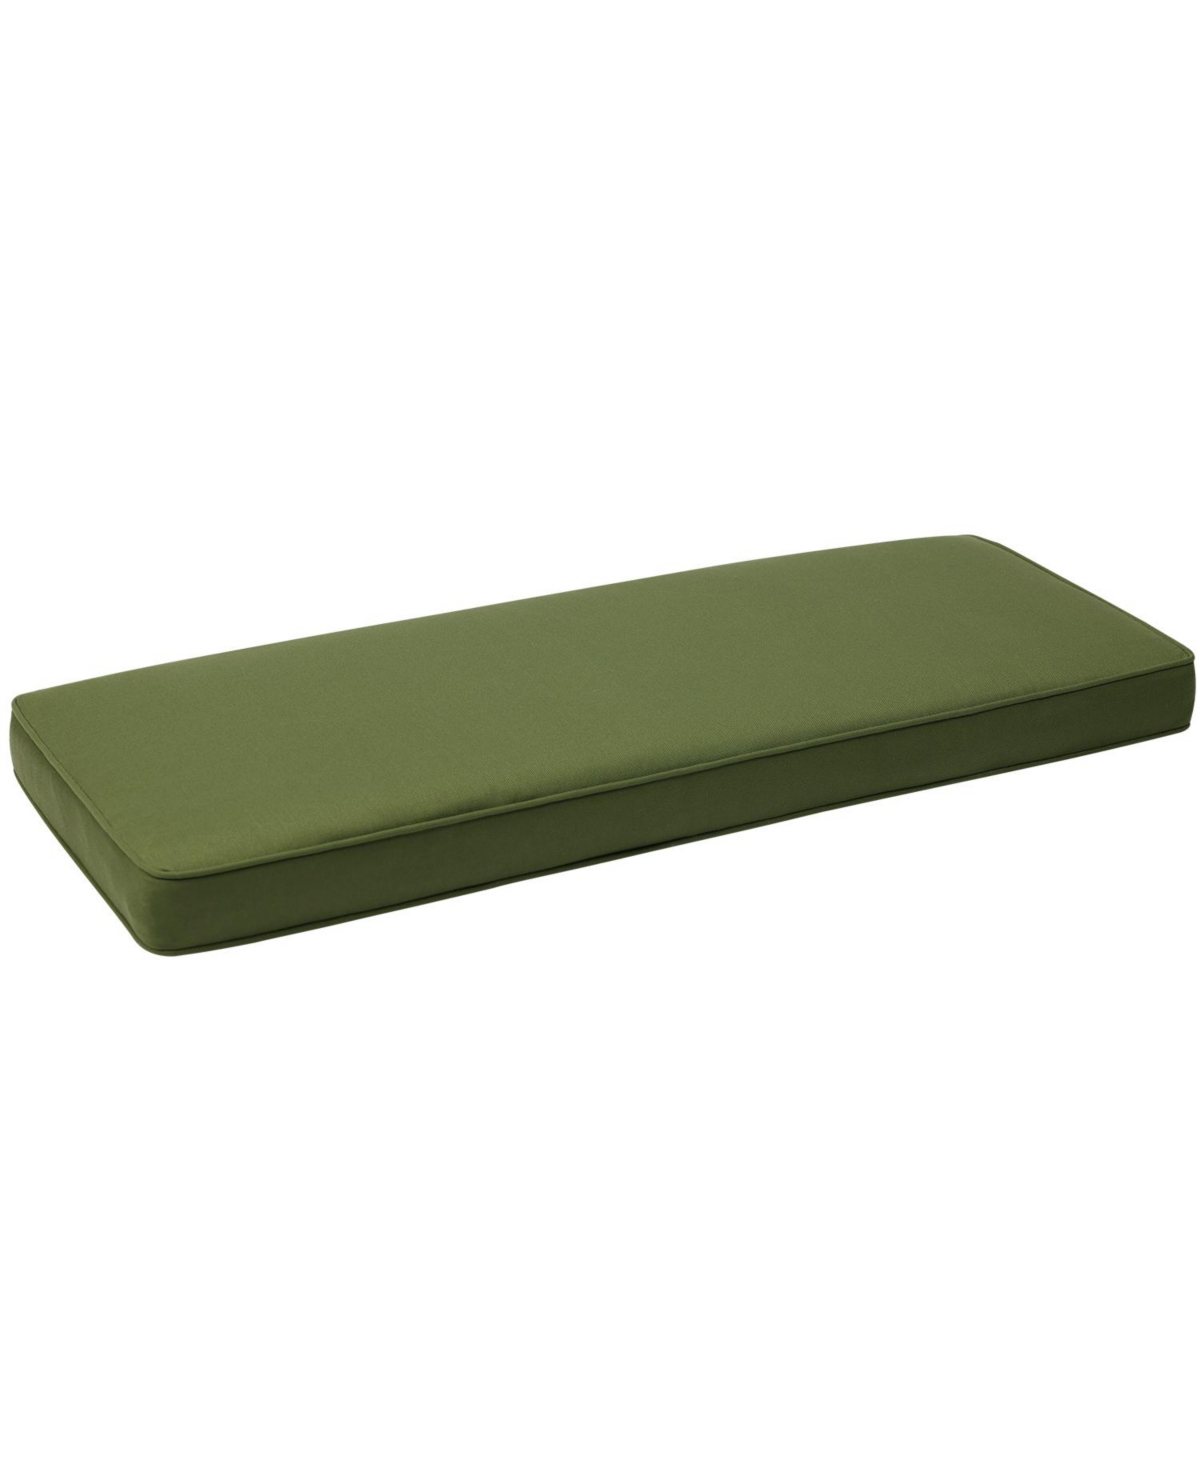 Patio Bench Cushion Outdoor Olefin Fabric Slipcover Sponge Foam 46.5" x 17.7" x 3" - Green - Green